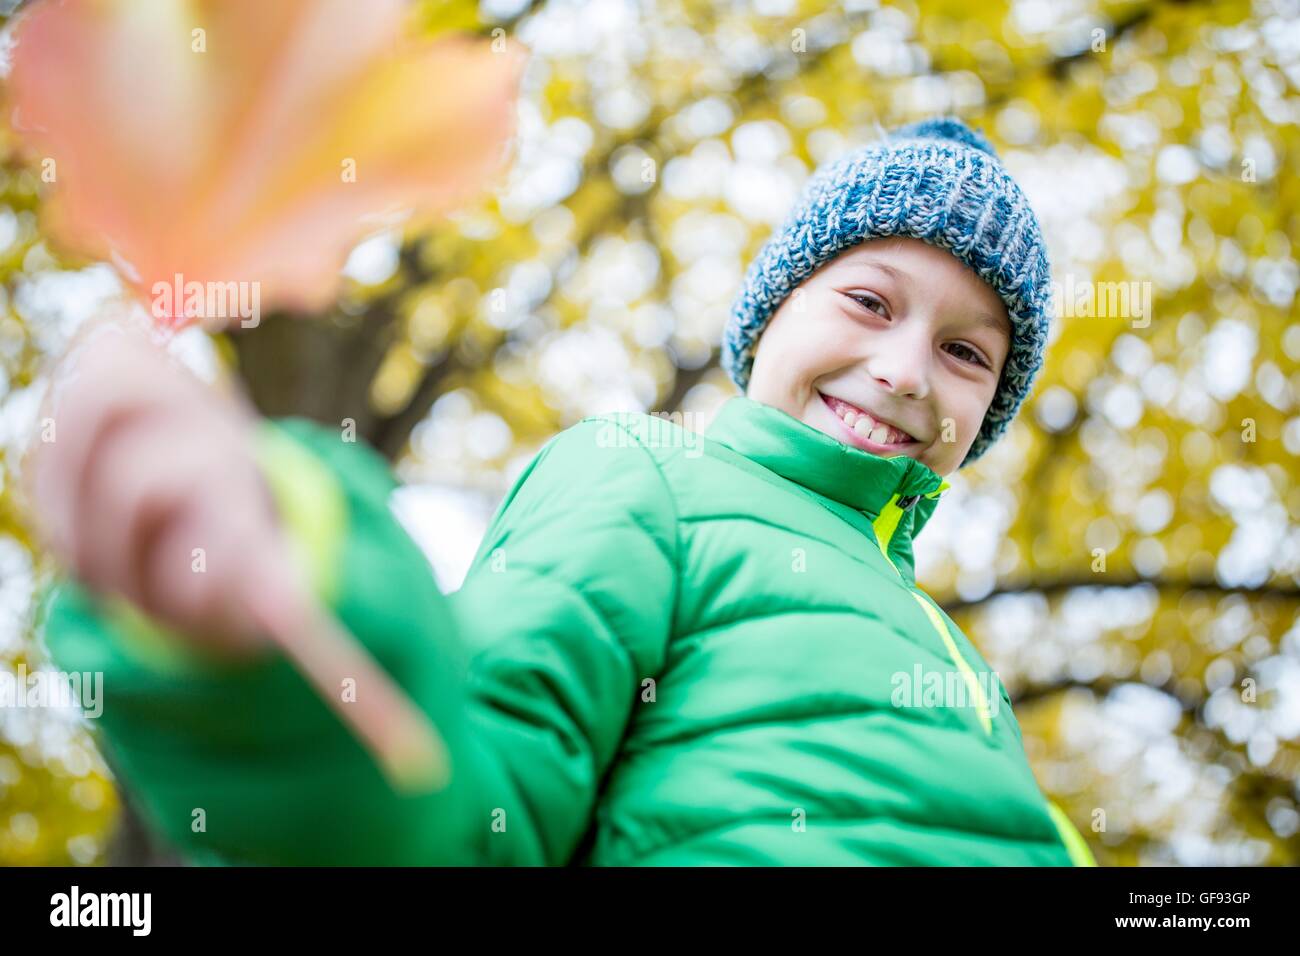 Modelo liberado. Sonriente niño usando woolly hat y chaqueta celebración leaf, retrato, cerca. Foto de stock